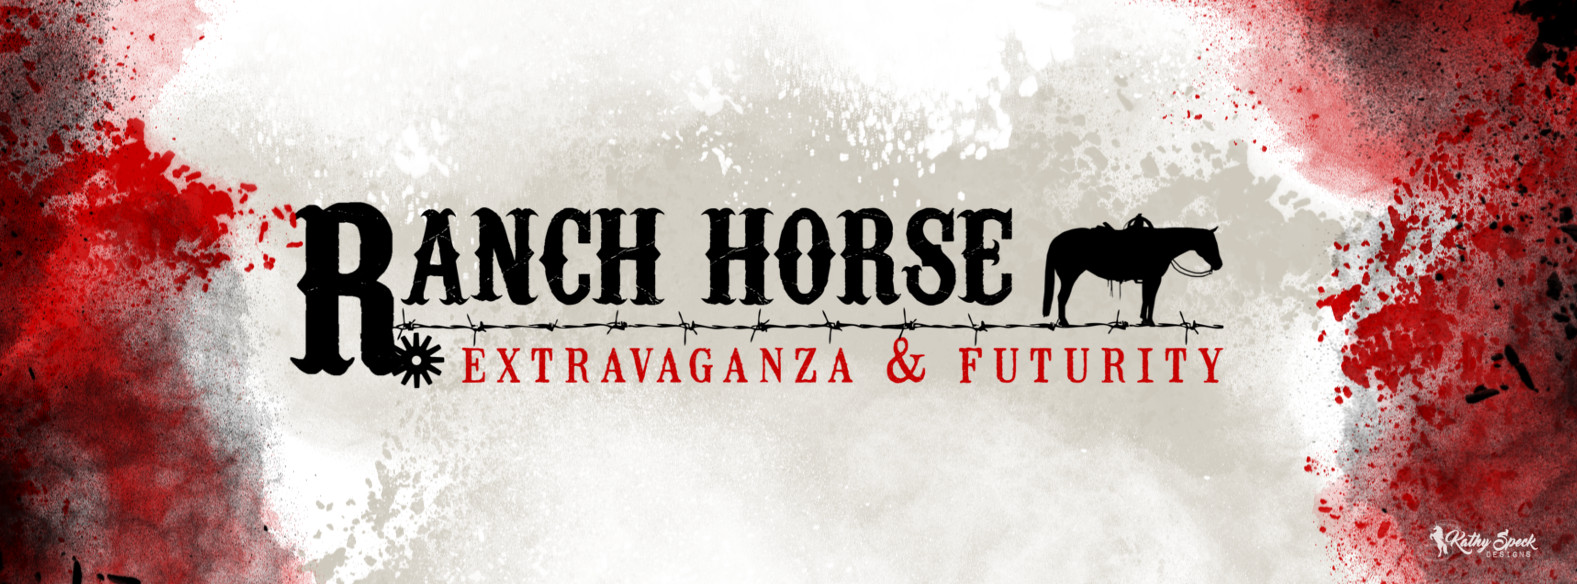 Ranch Horse Extravaganza & Futurity